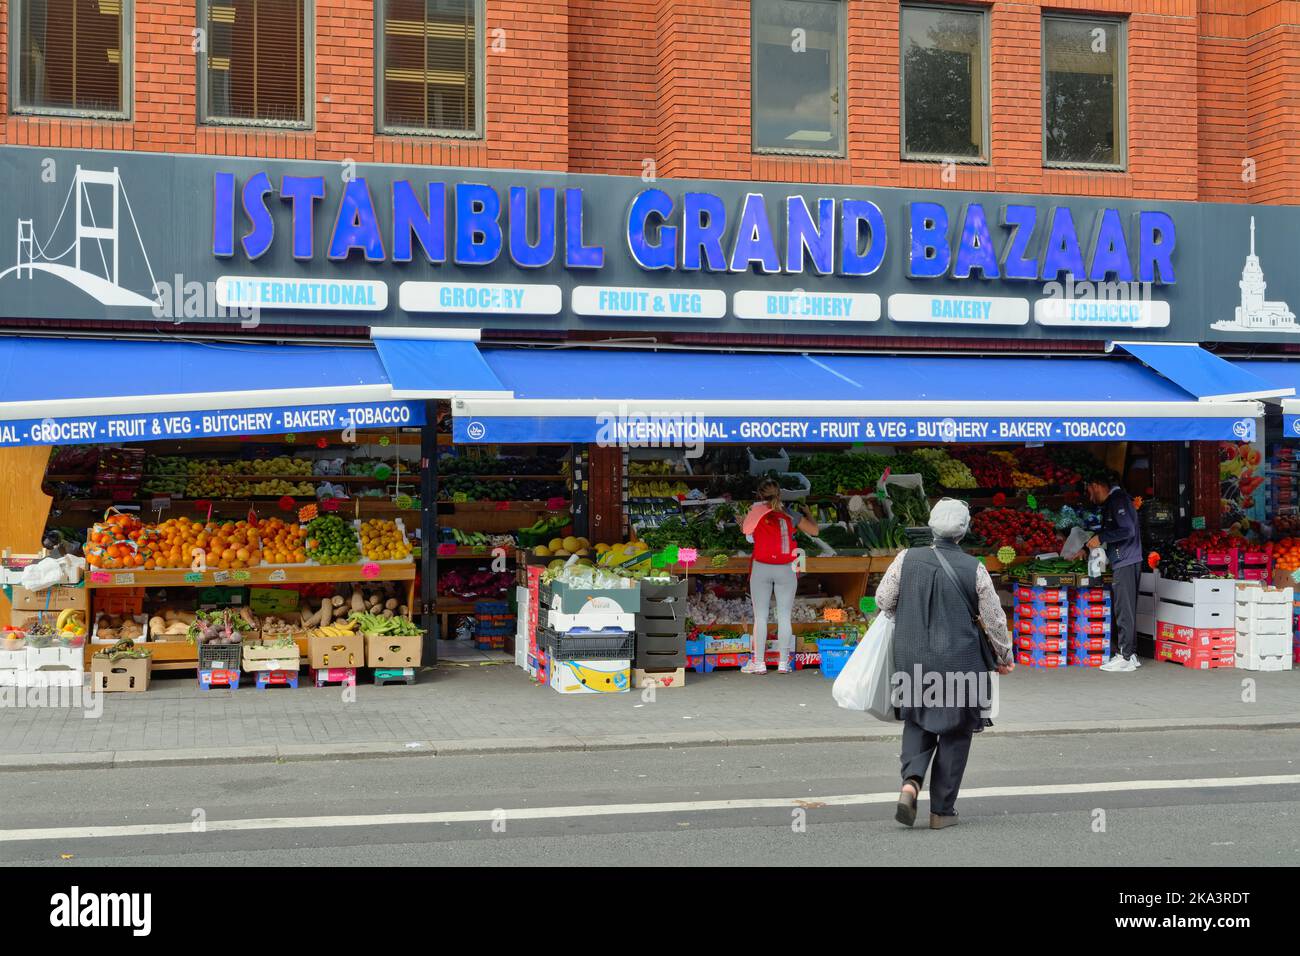 Extérieur de l'épicerie internationale « Istanbul Grand Bazar » sur Hounslow High Street West Londres Angleterre Royaume-Uni Banque D'Images